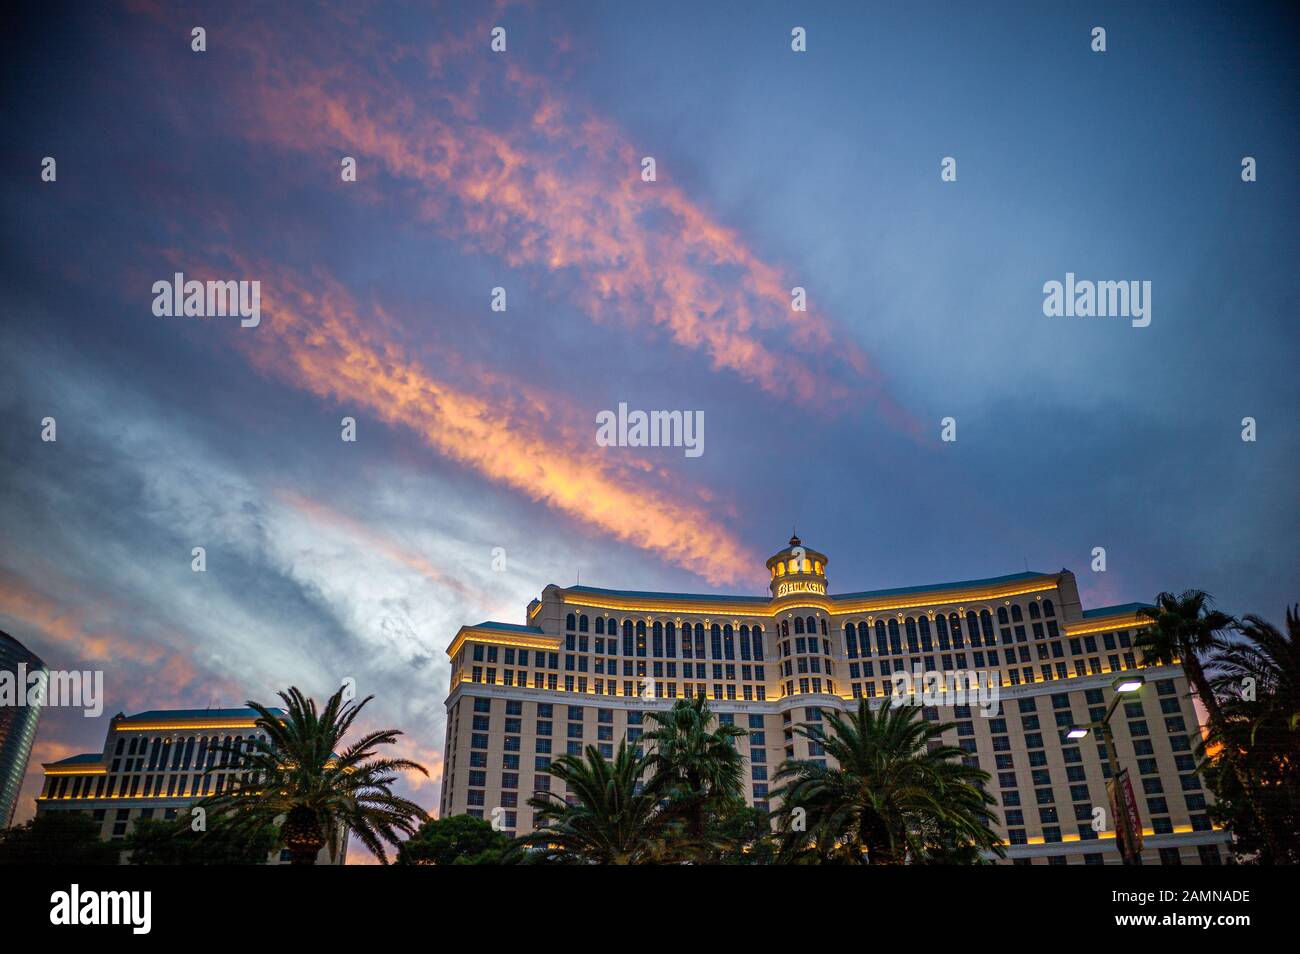 Das Bellagio ist ein Resort, Luxushotel und Casino am Las Vegas Strip im Paradise, Nevada. Stockfoto